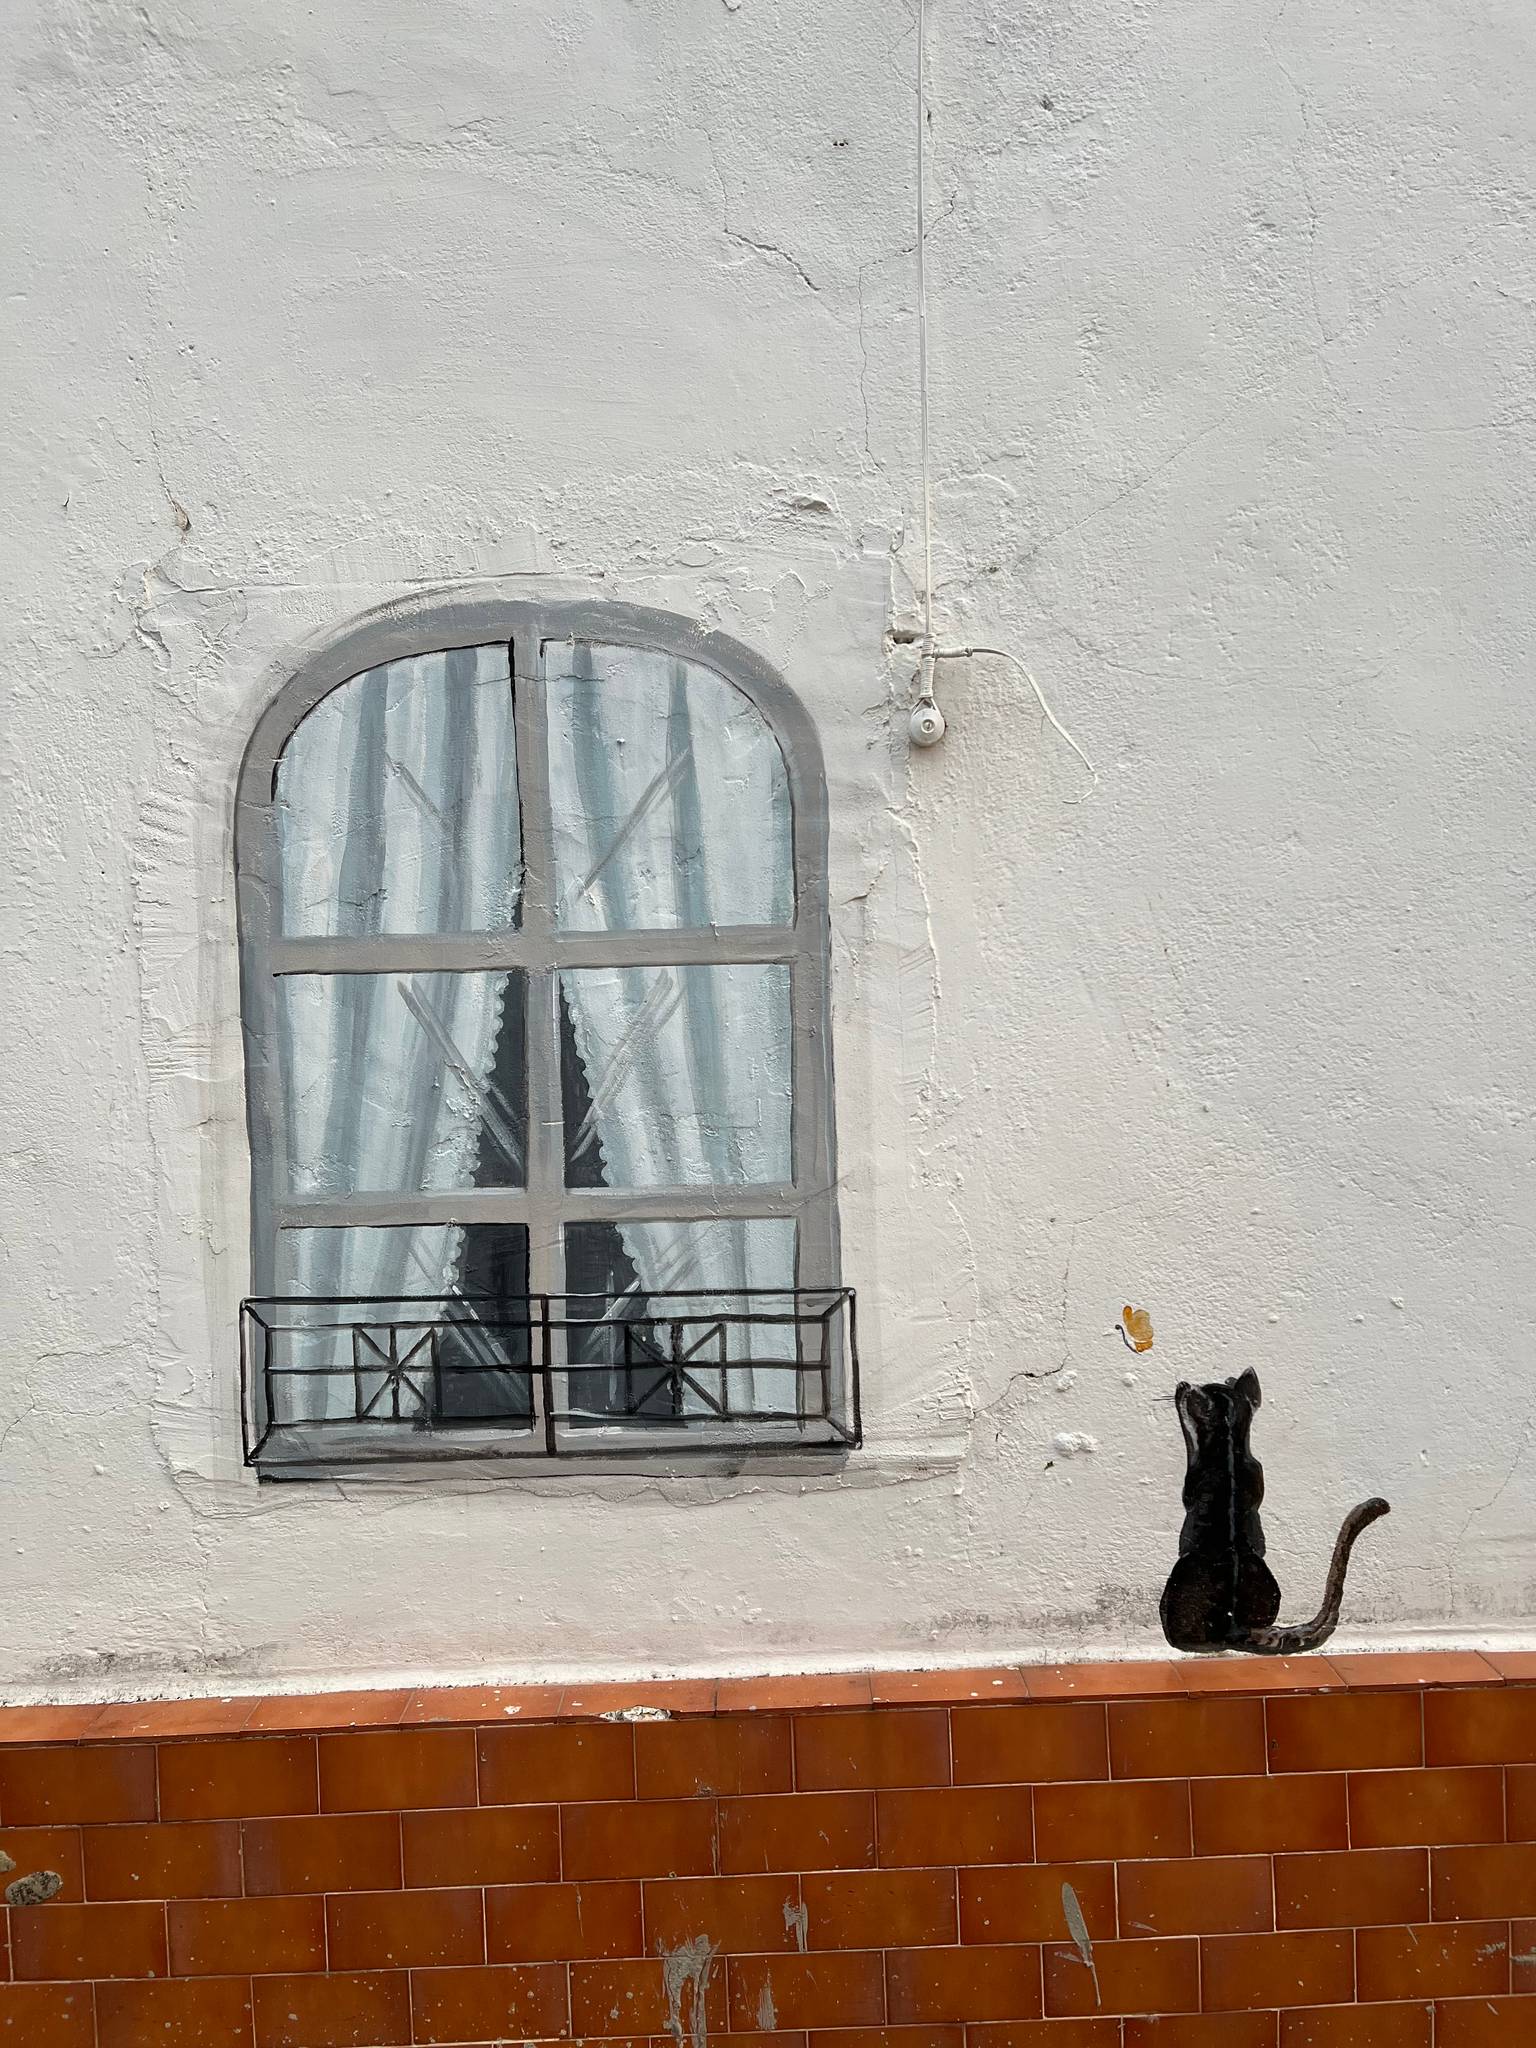 Manuela Perta M.&mdash;El gato de la ventana